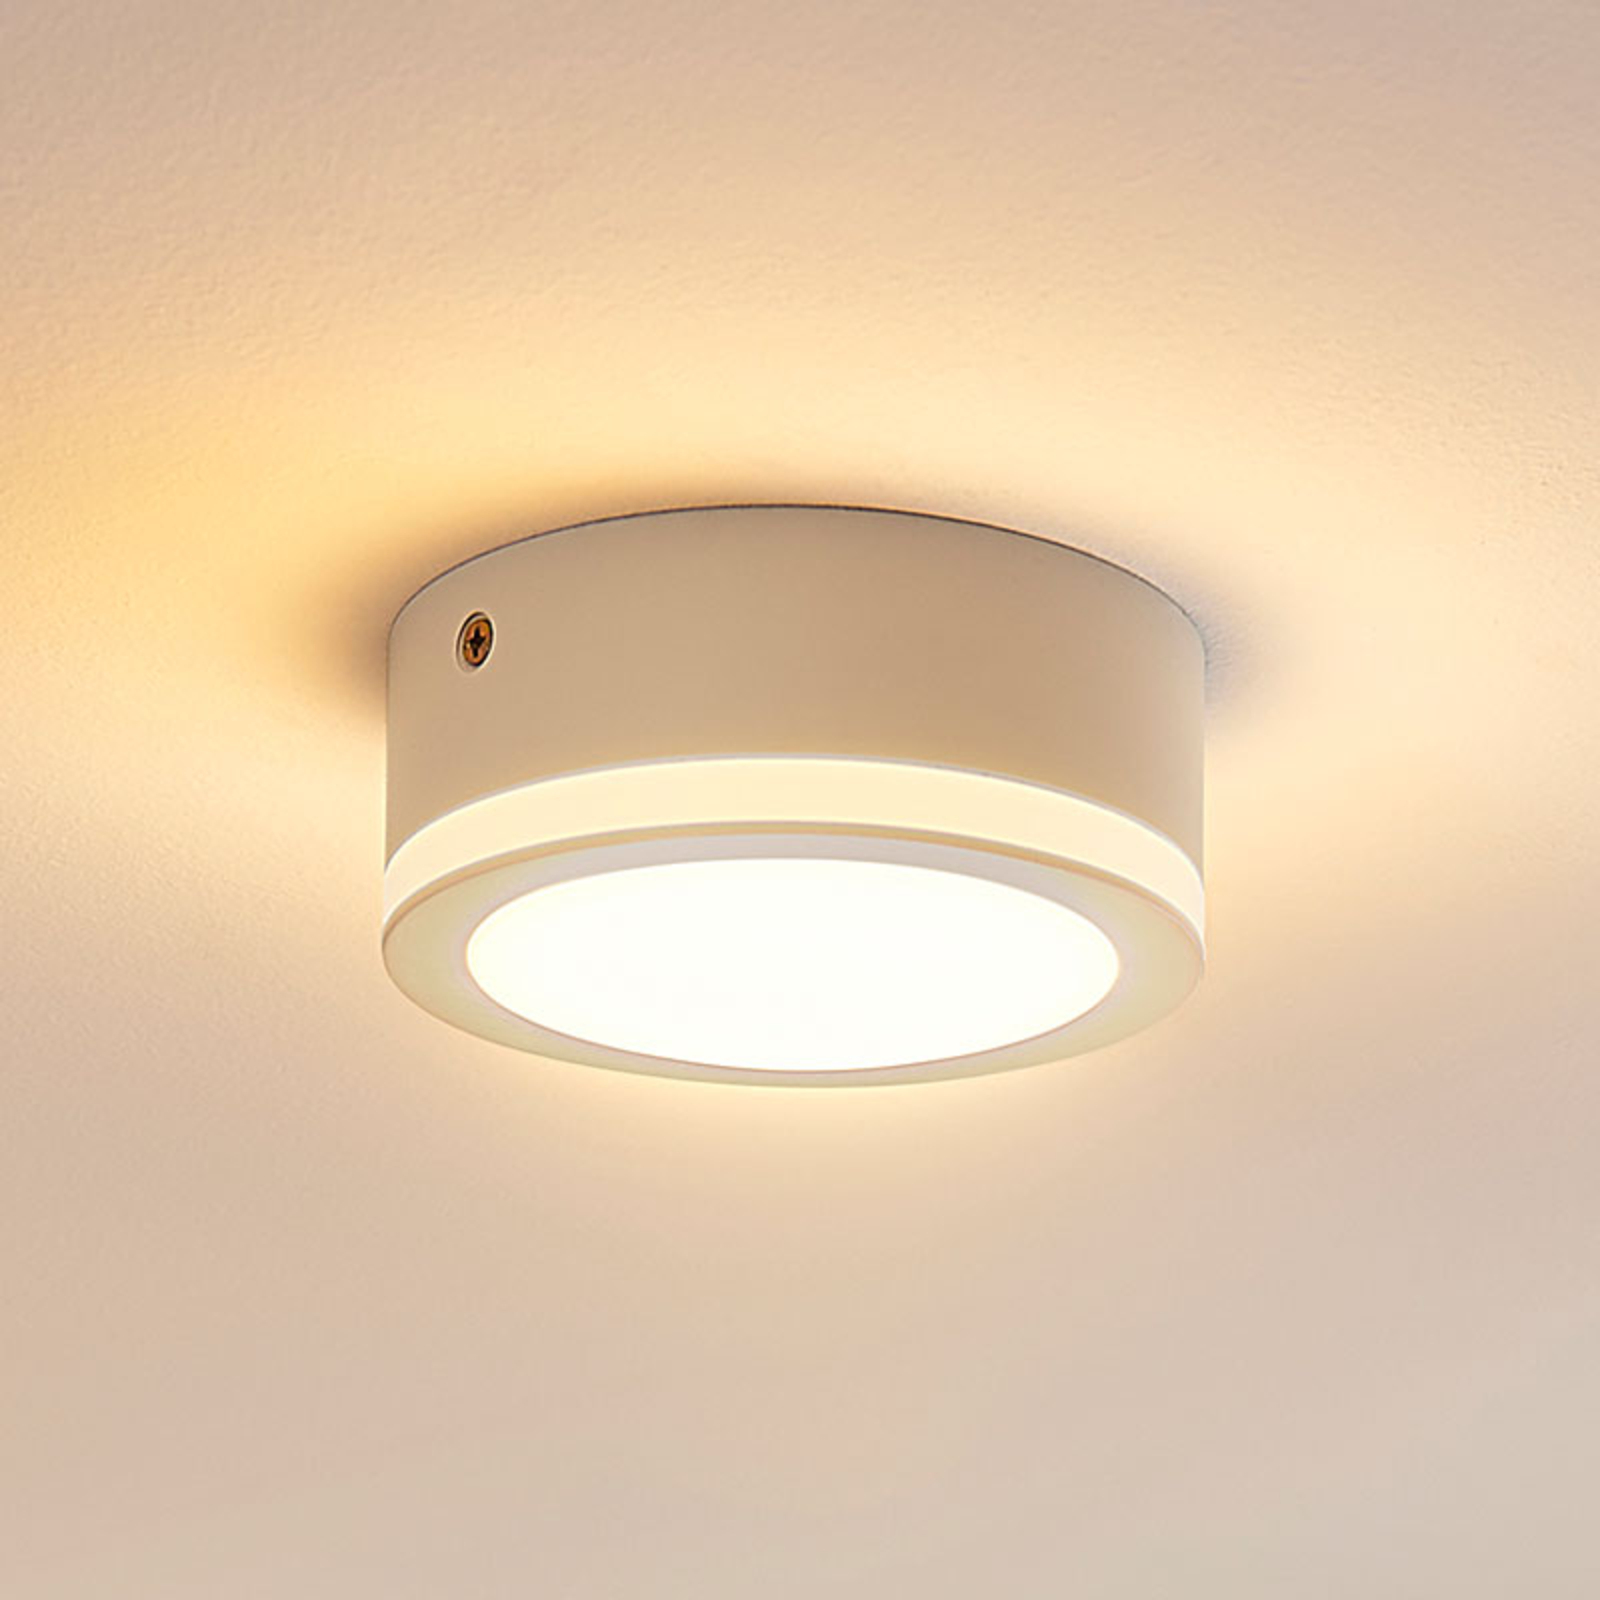 Simple, round LED ceiling light Quirina